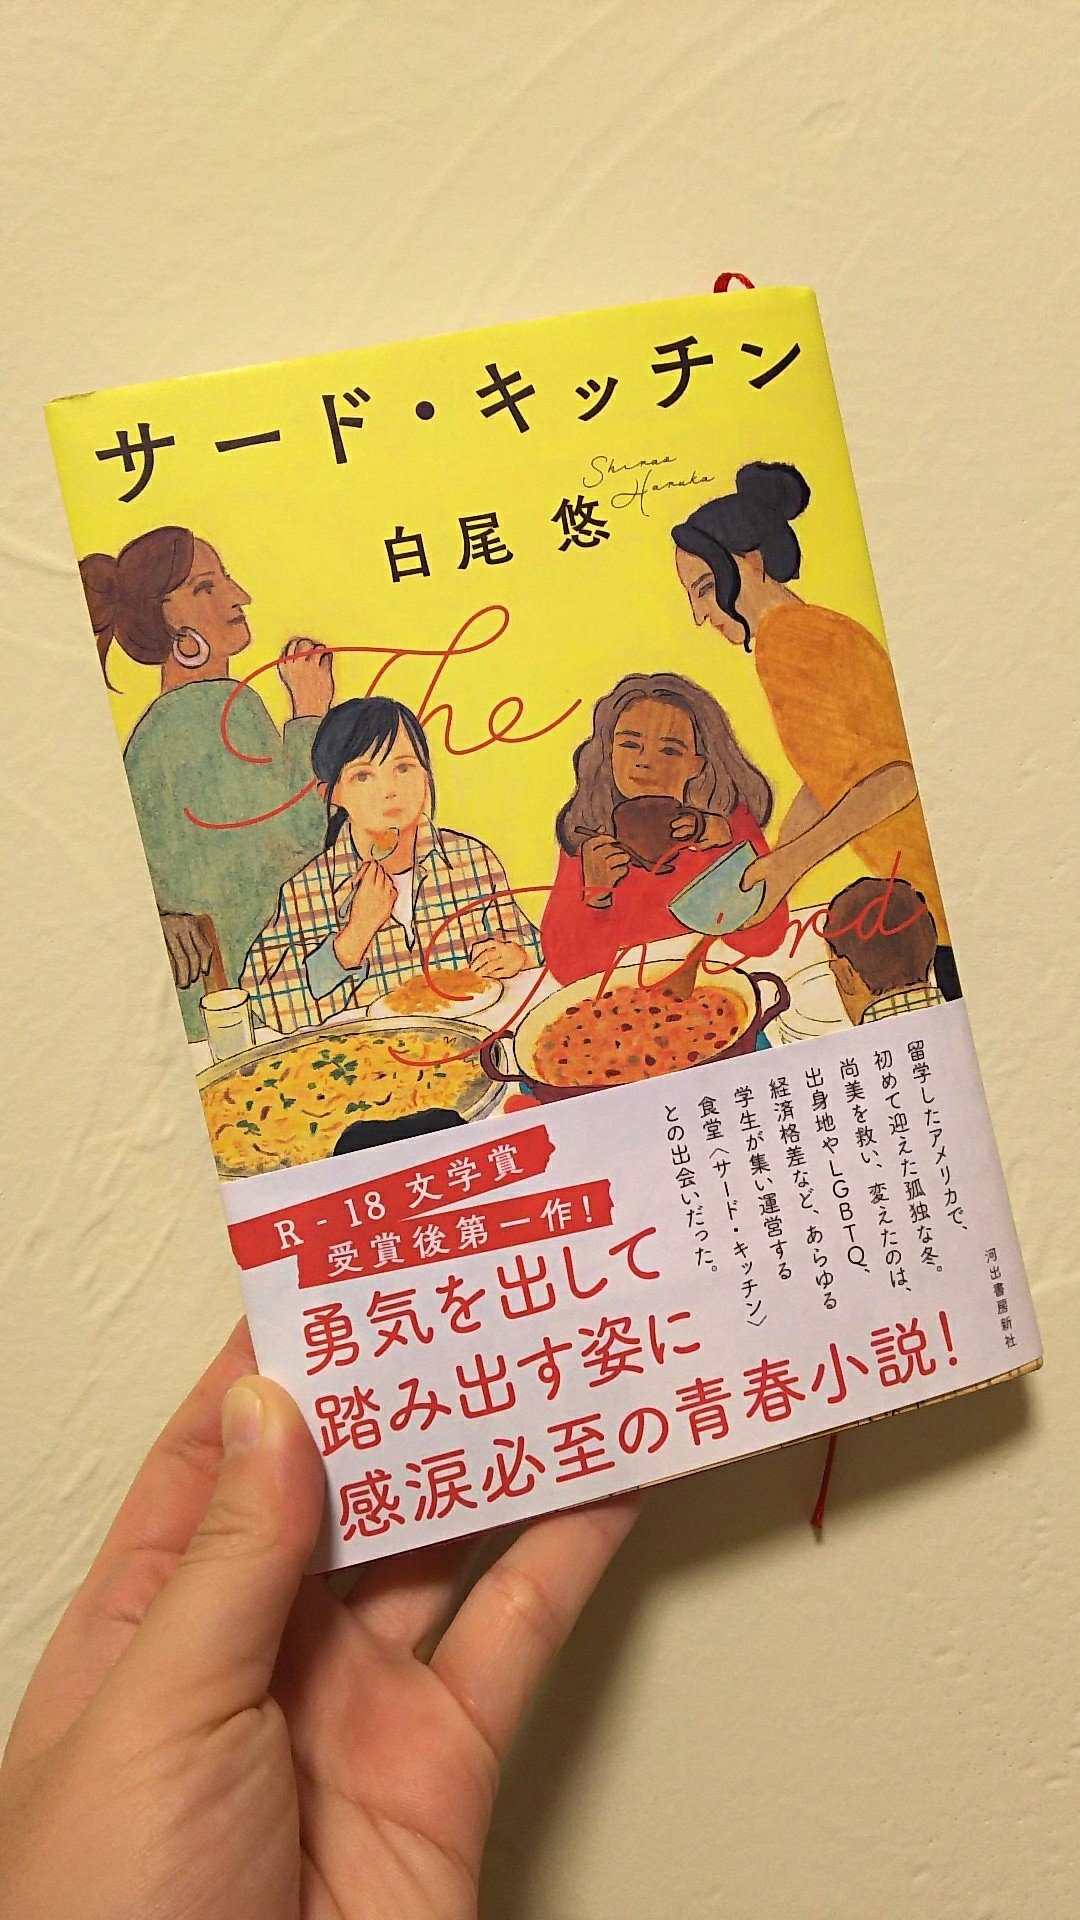 彩瀬まる 白尾悠さんの サード キッチン めちゃくちゃ 良かった アメリカに留学し 初めてマイノリティの立場になった日本の女の子が 言語や人種 性的志向 歴史と個人の関係性など 様々な テーマと組み合い その向こうの他者と交流する青春小説